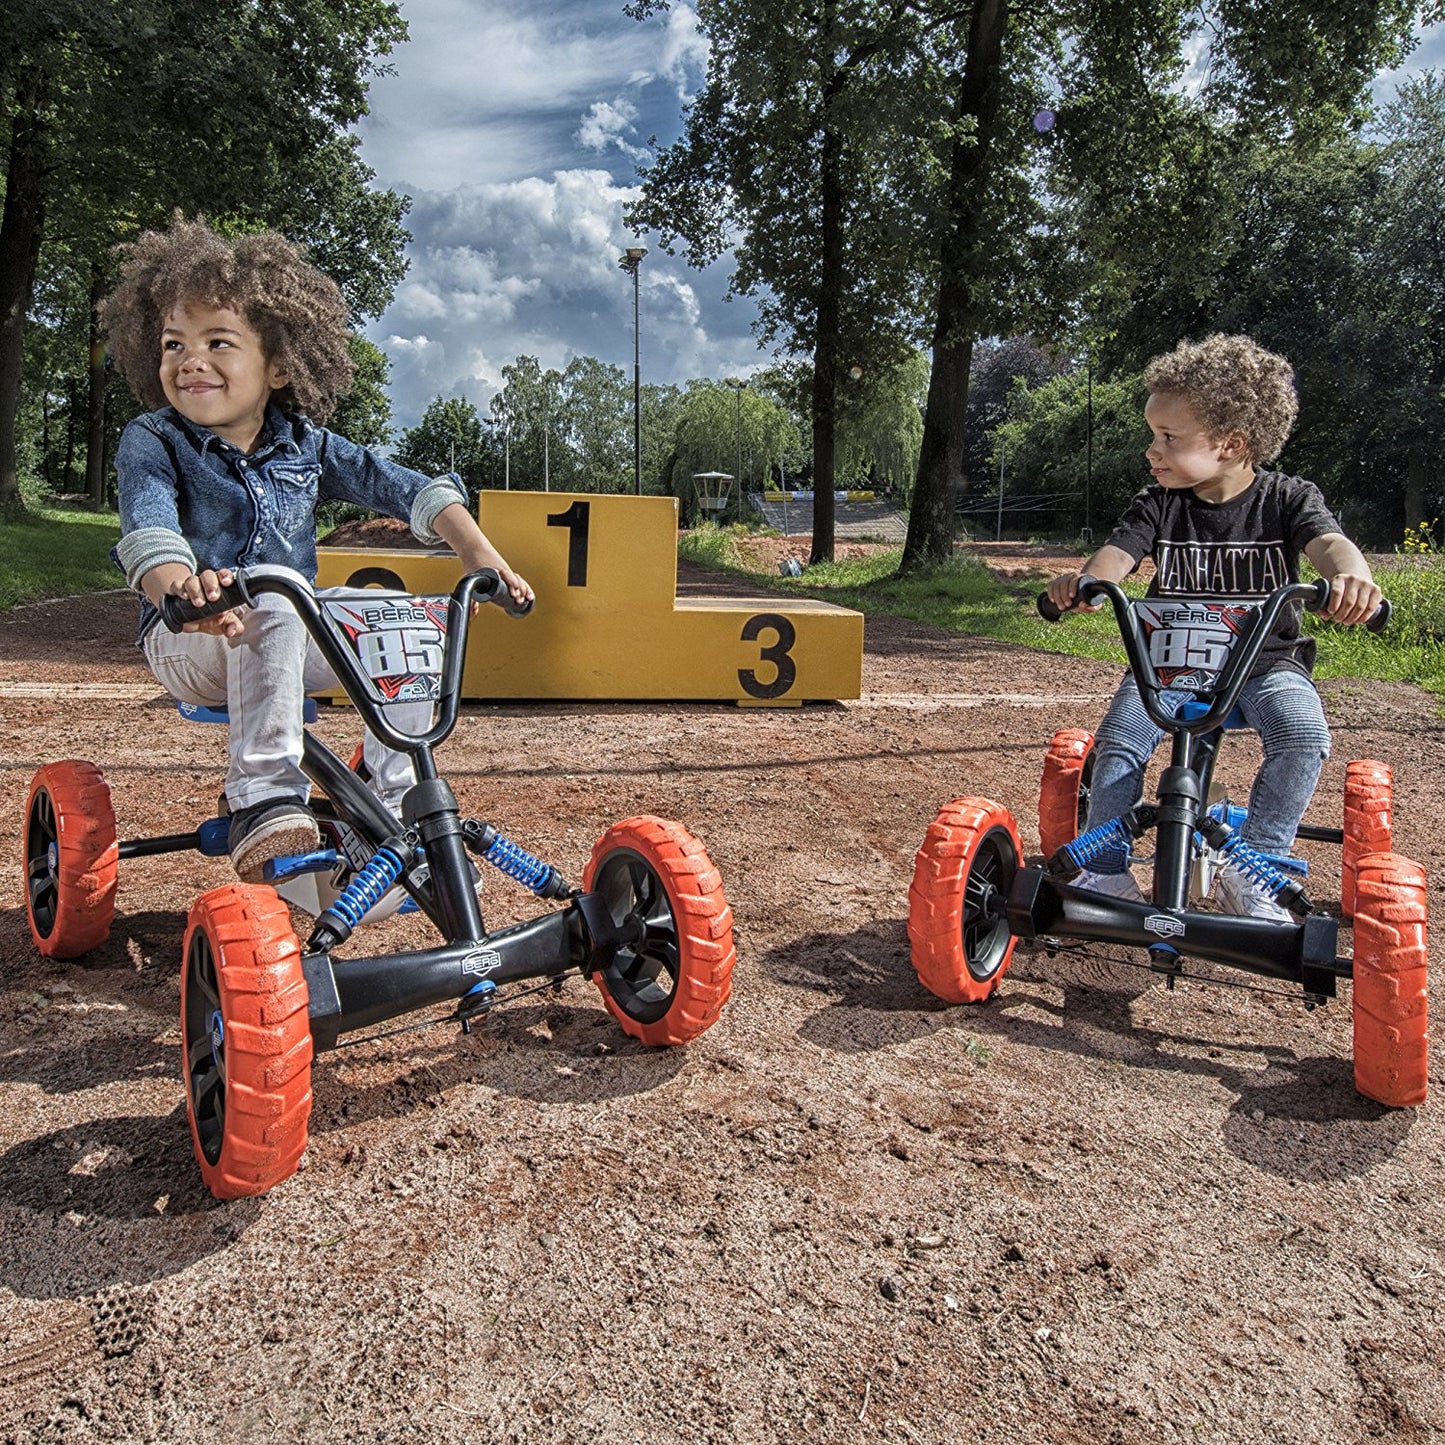 BERG Toys Buzzy Nitro Kids Pedal Go Kart